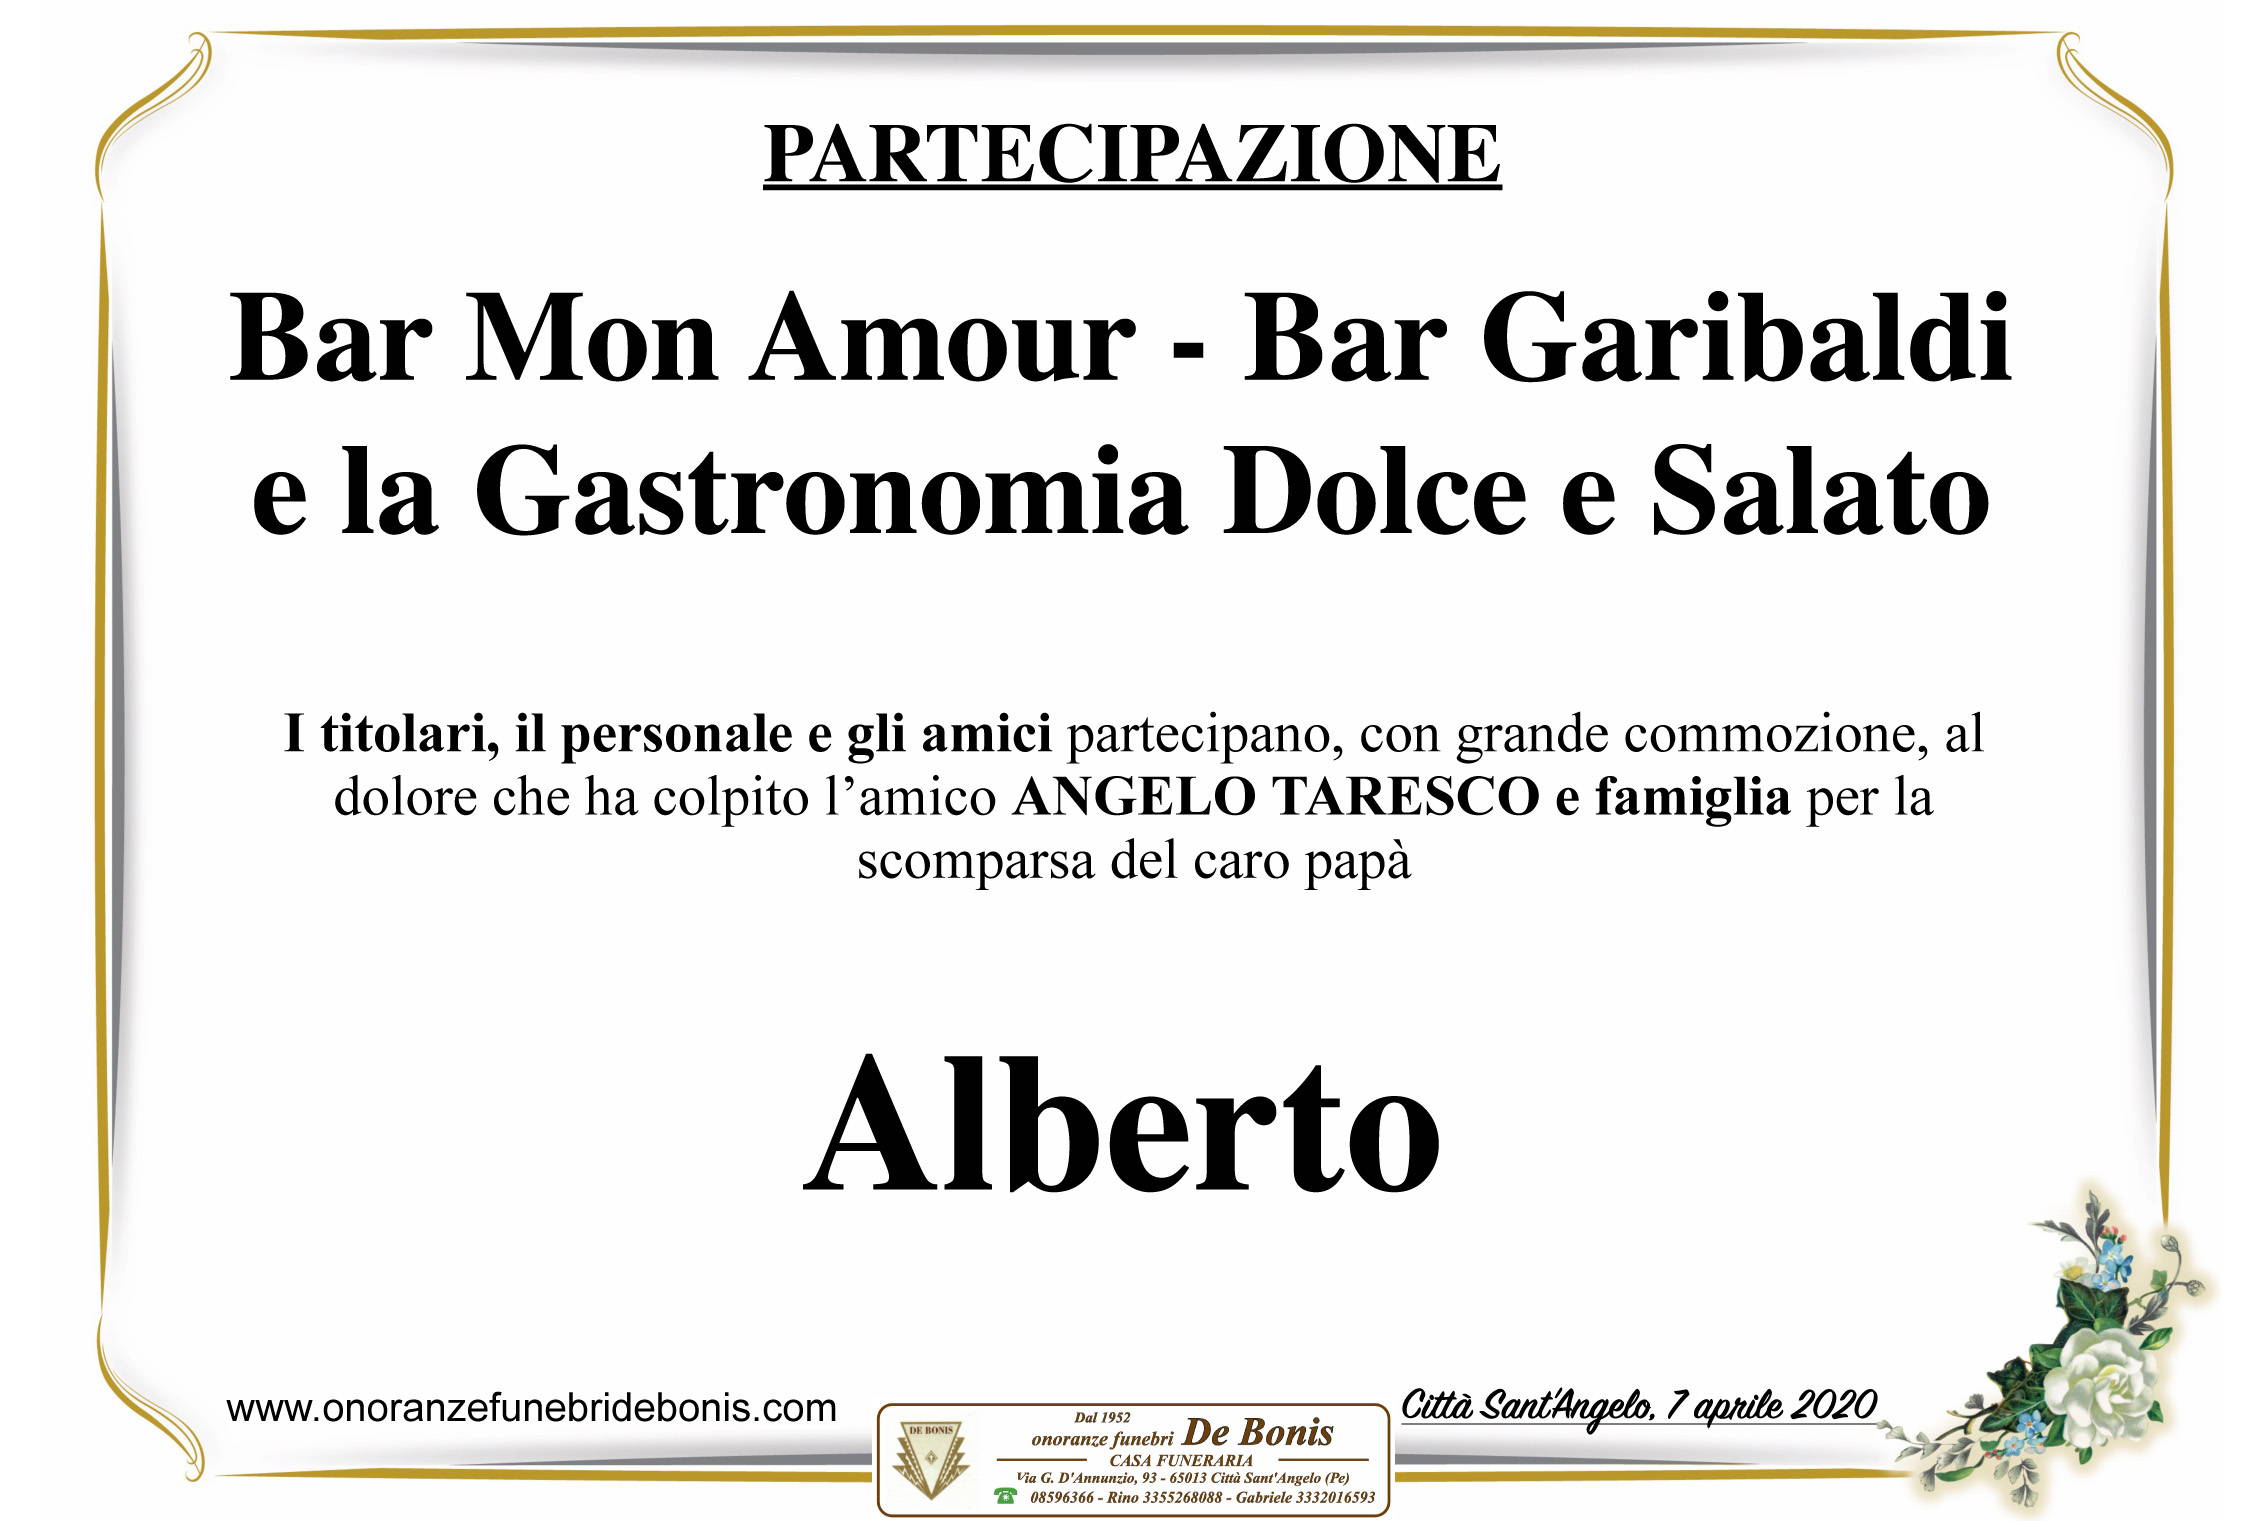 Bar Mon Amour, Bar Garibaldi e la Gastronomia Dolce e Salato